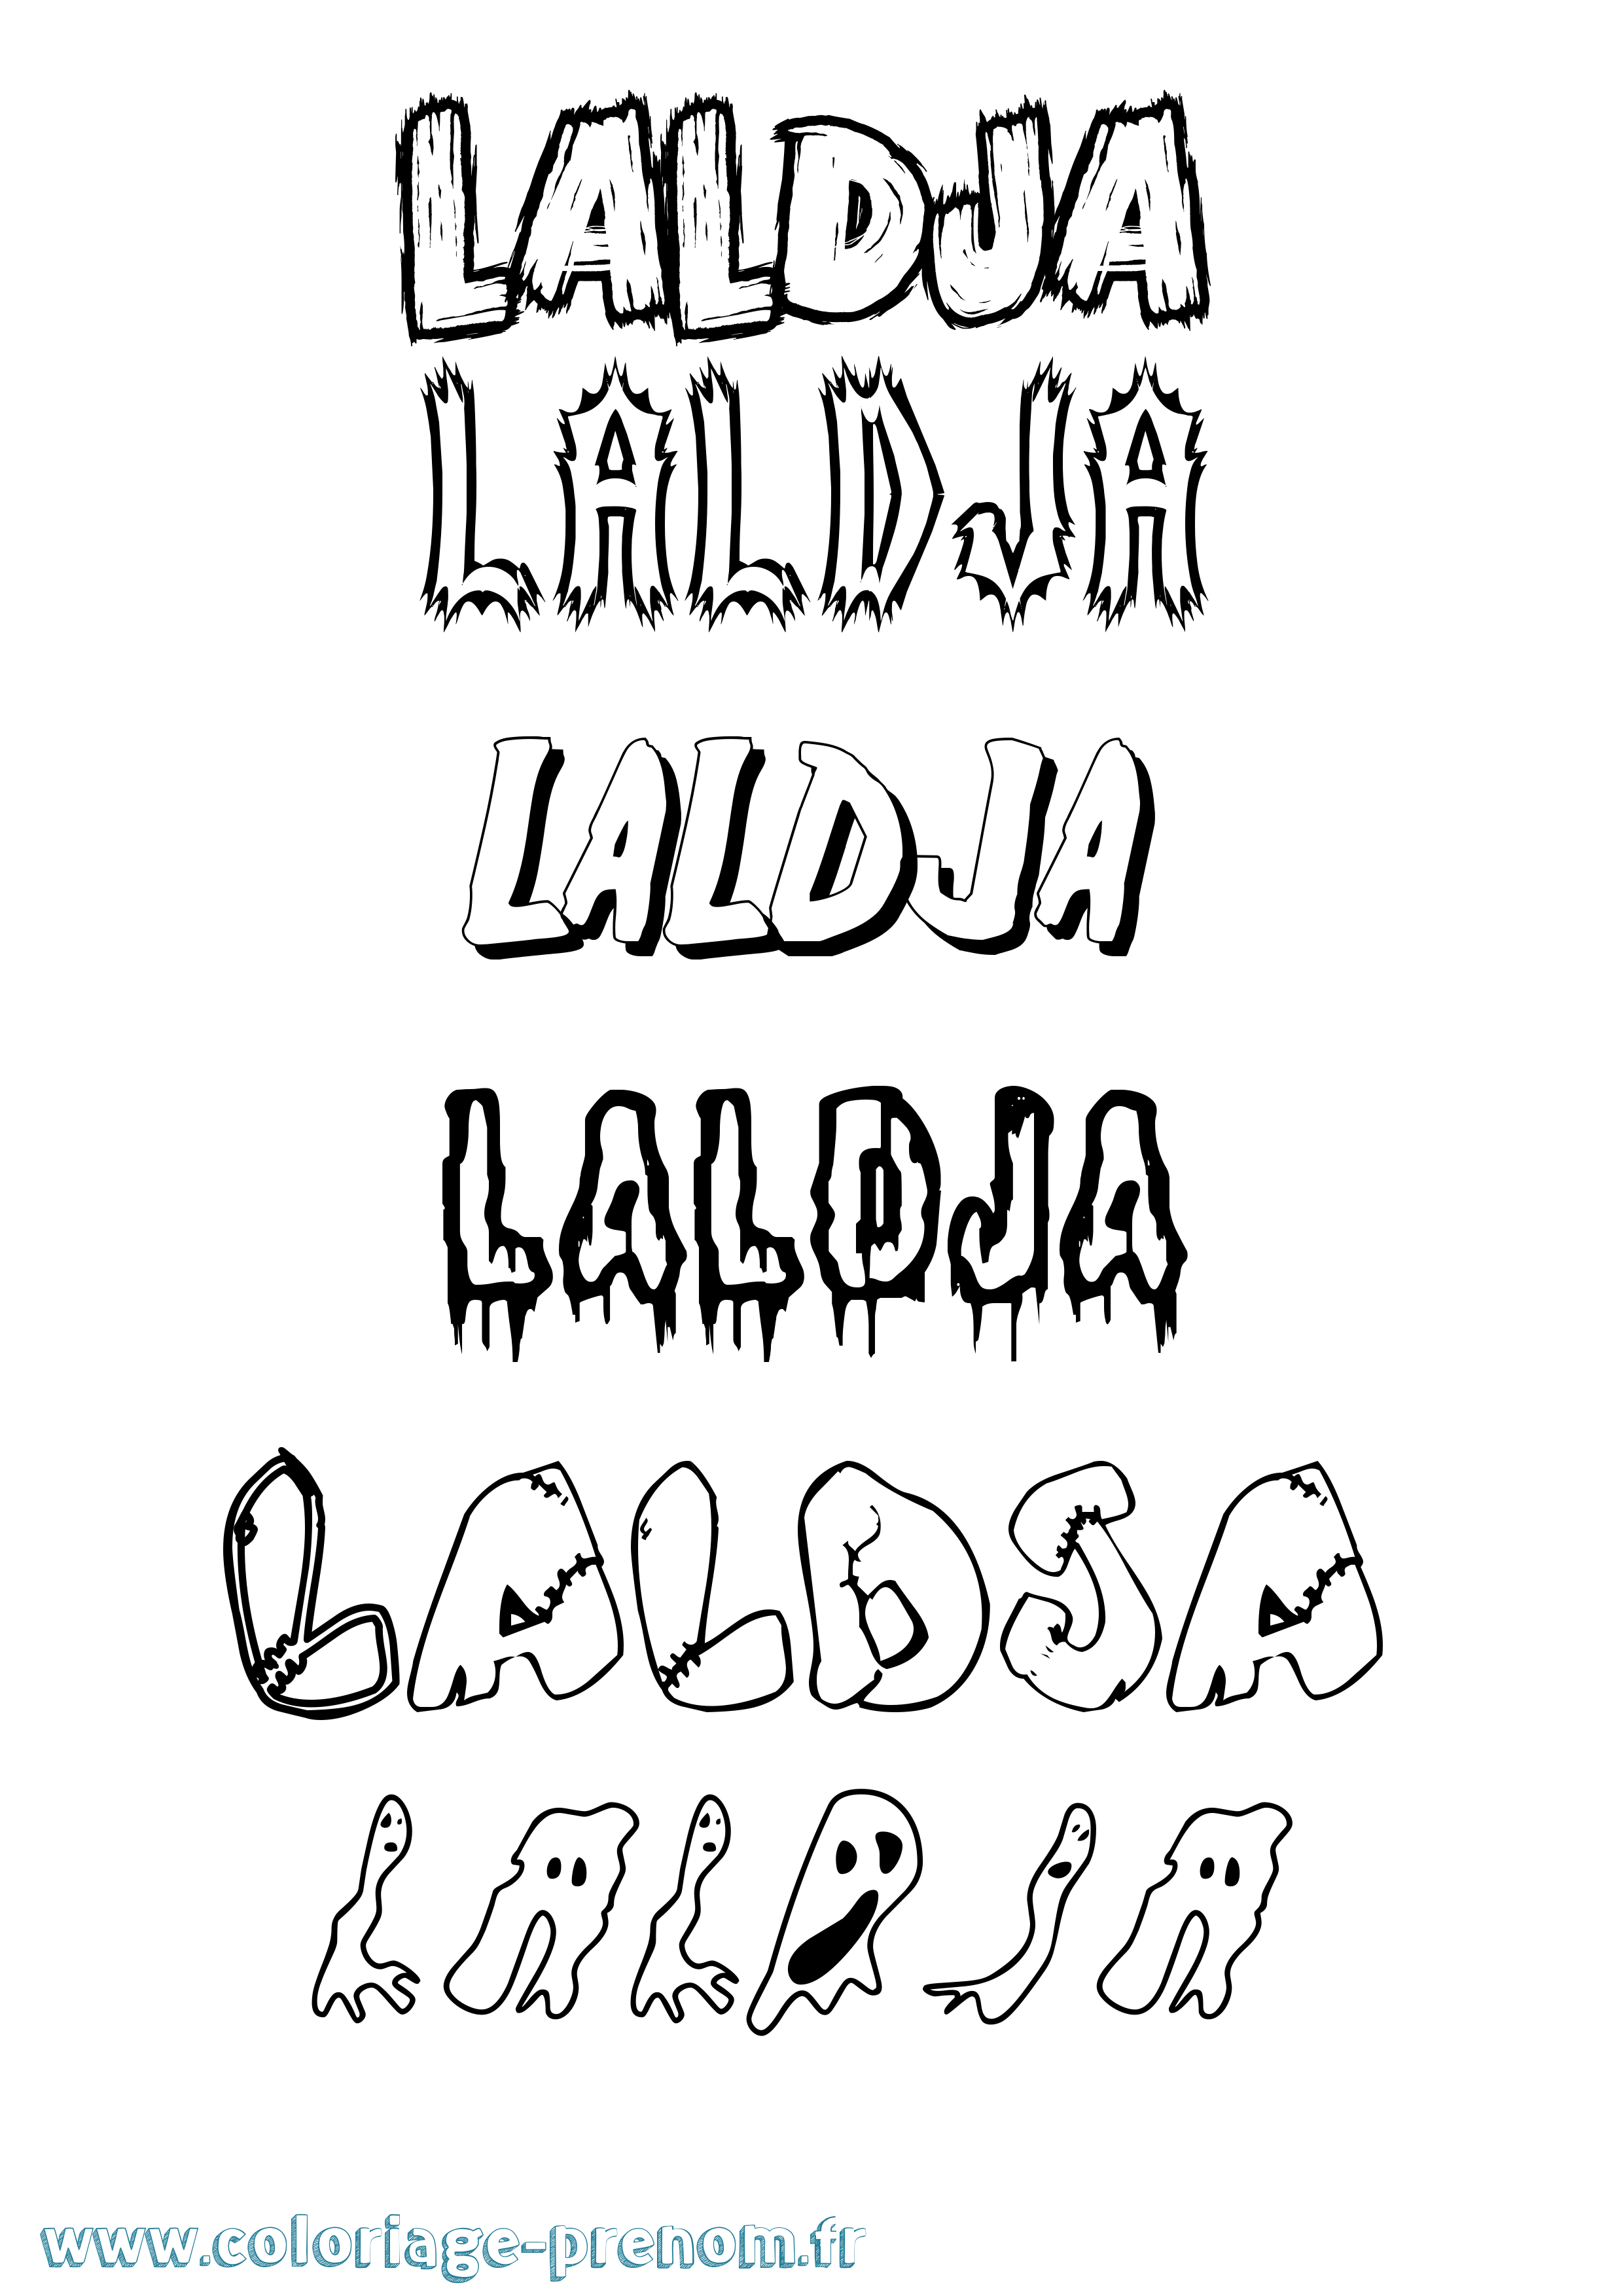 Coloriage prénom Laldja Frisson